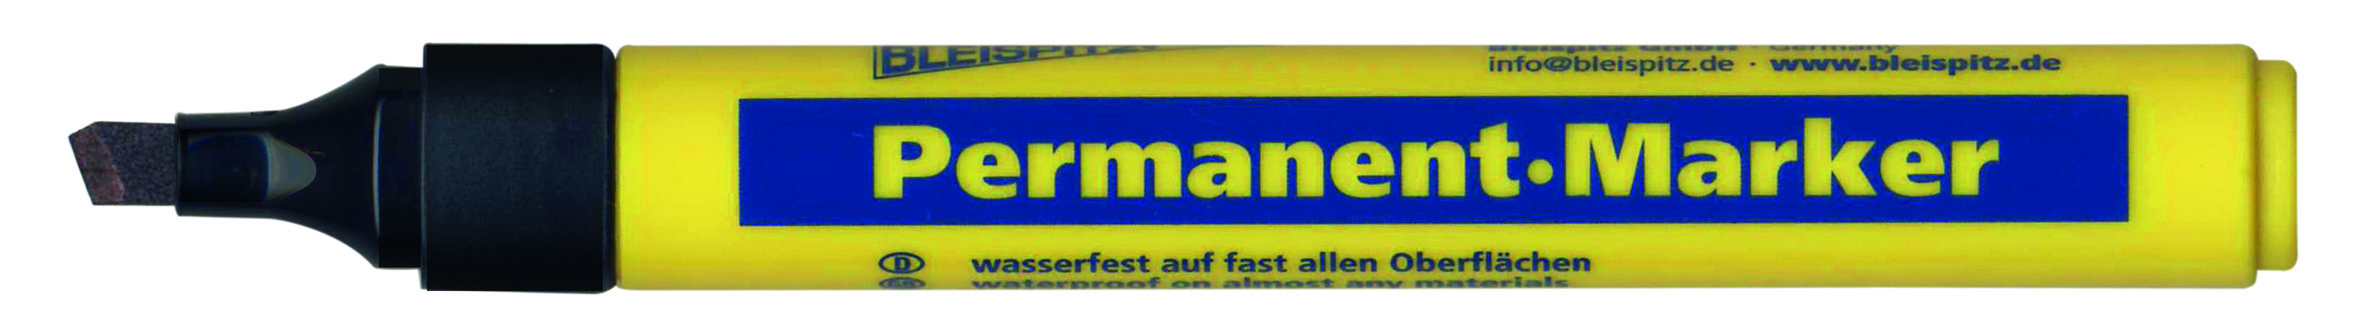 BLEISPITZ Permanent Marker: 4 färger, fler varianter - Svart 1-5 mm rektangulär